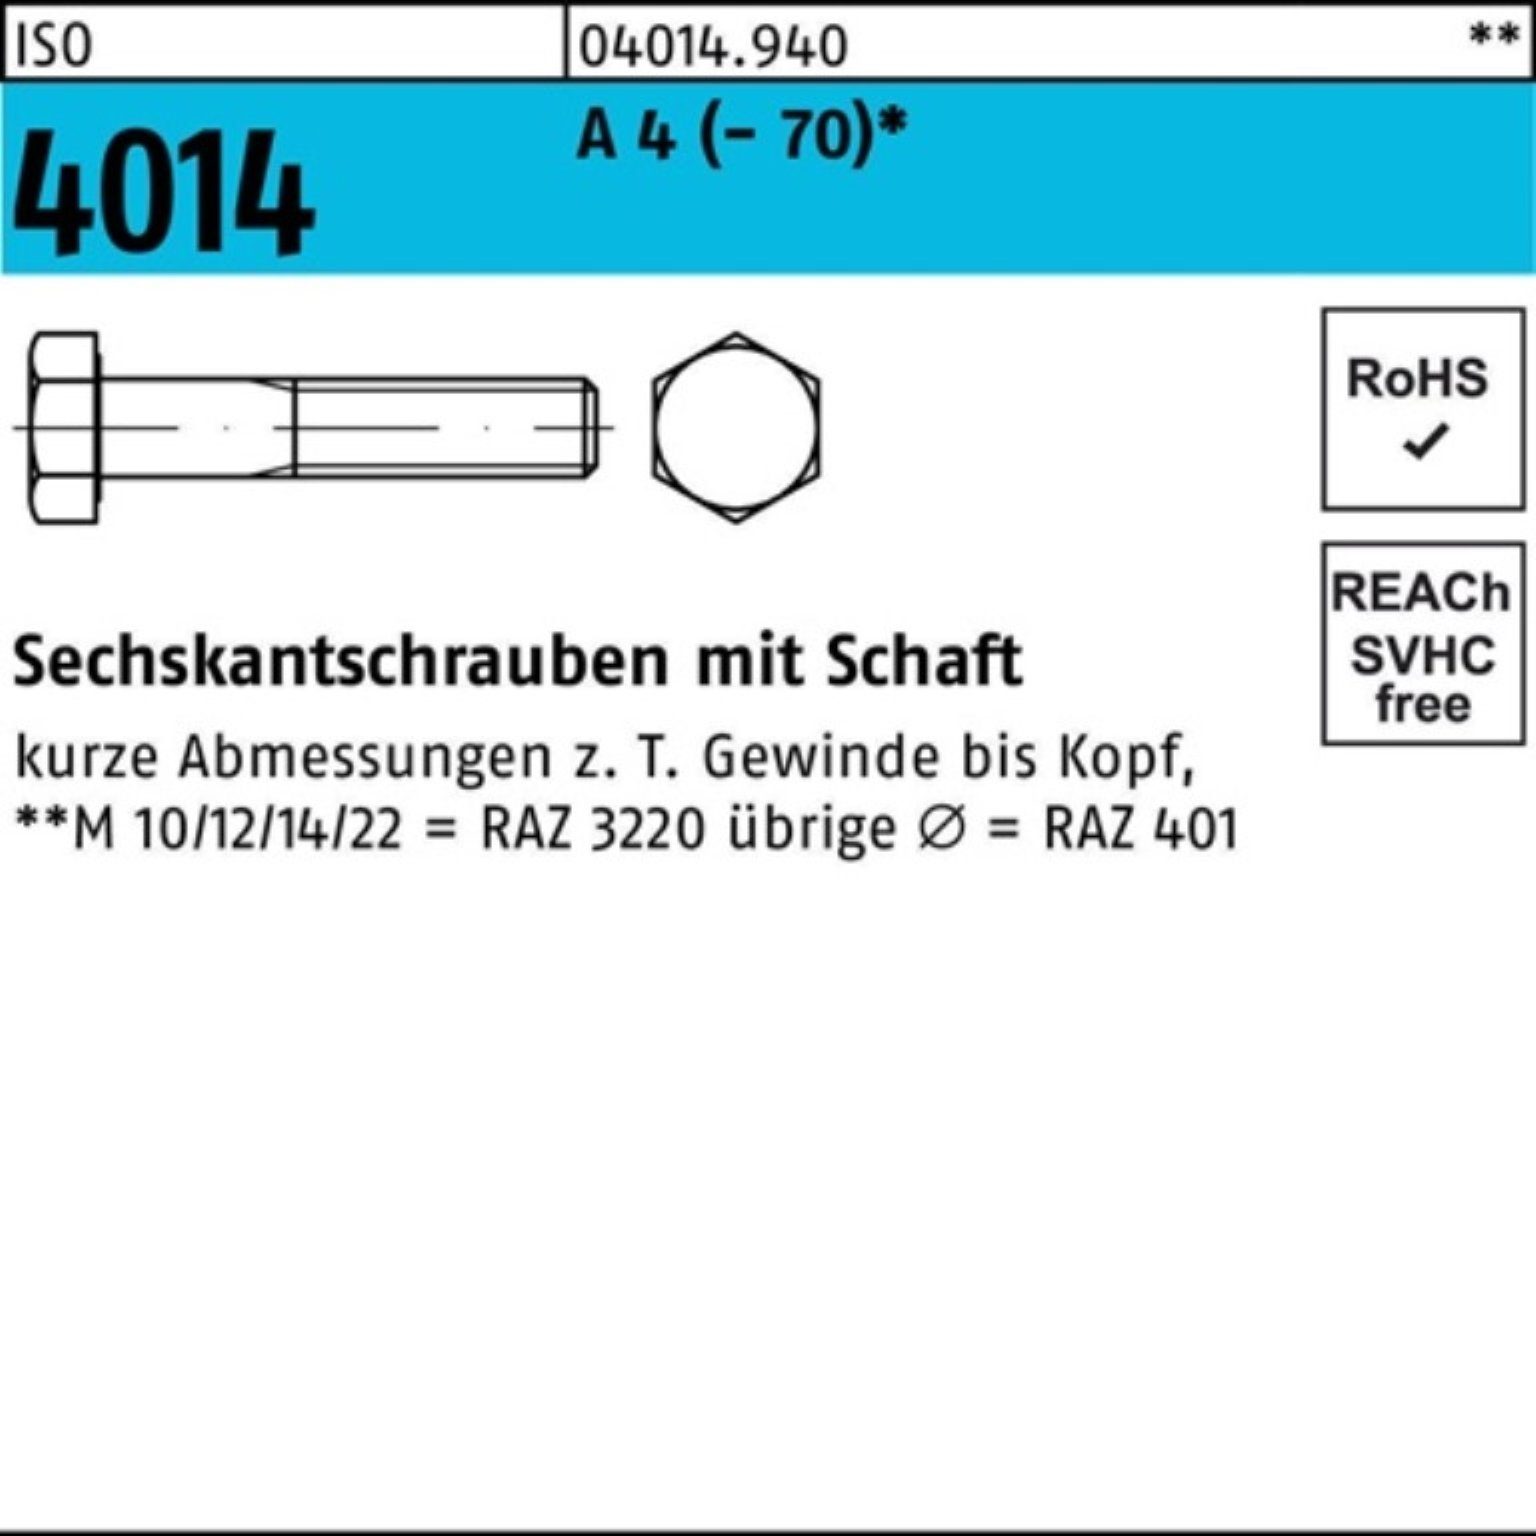 ISO Sechskantschraube Bufab 4 St Pack M16x Schaft (70) 100er A 50 Sechskantschraube 4014 65